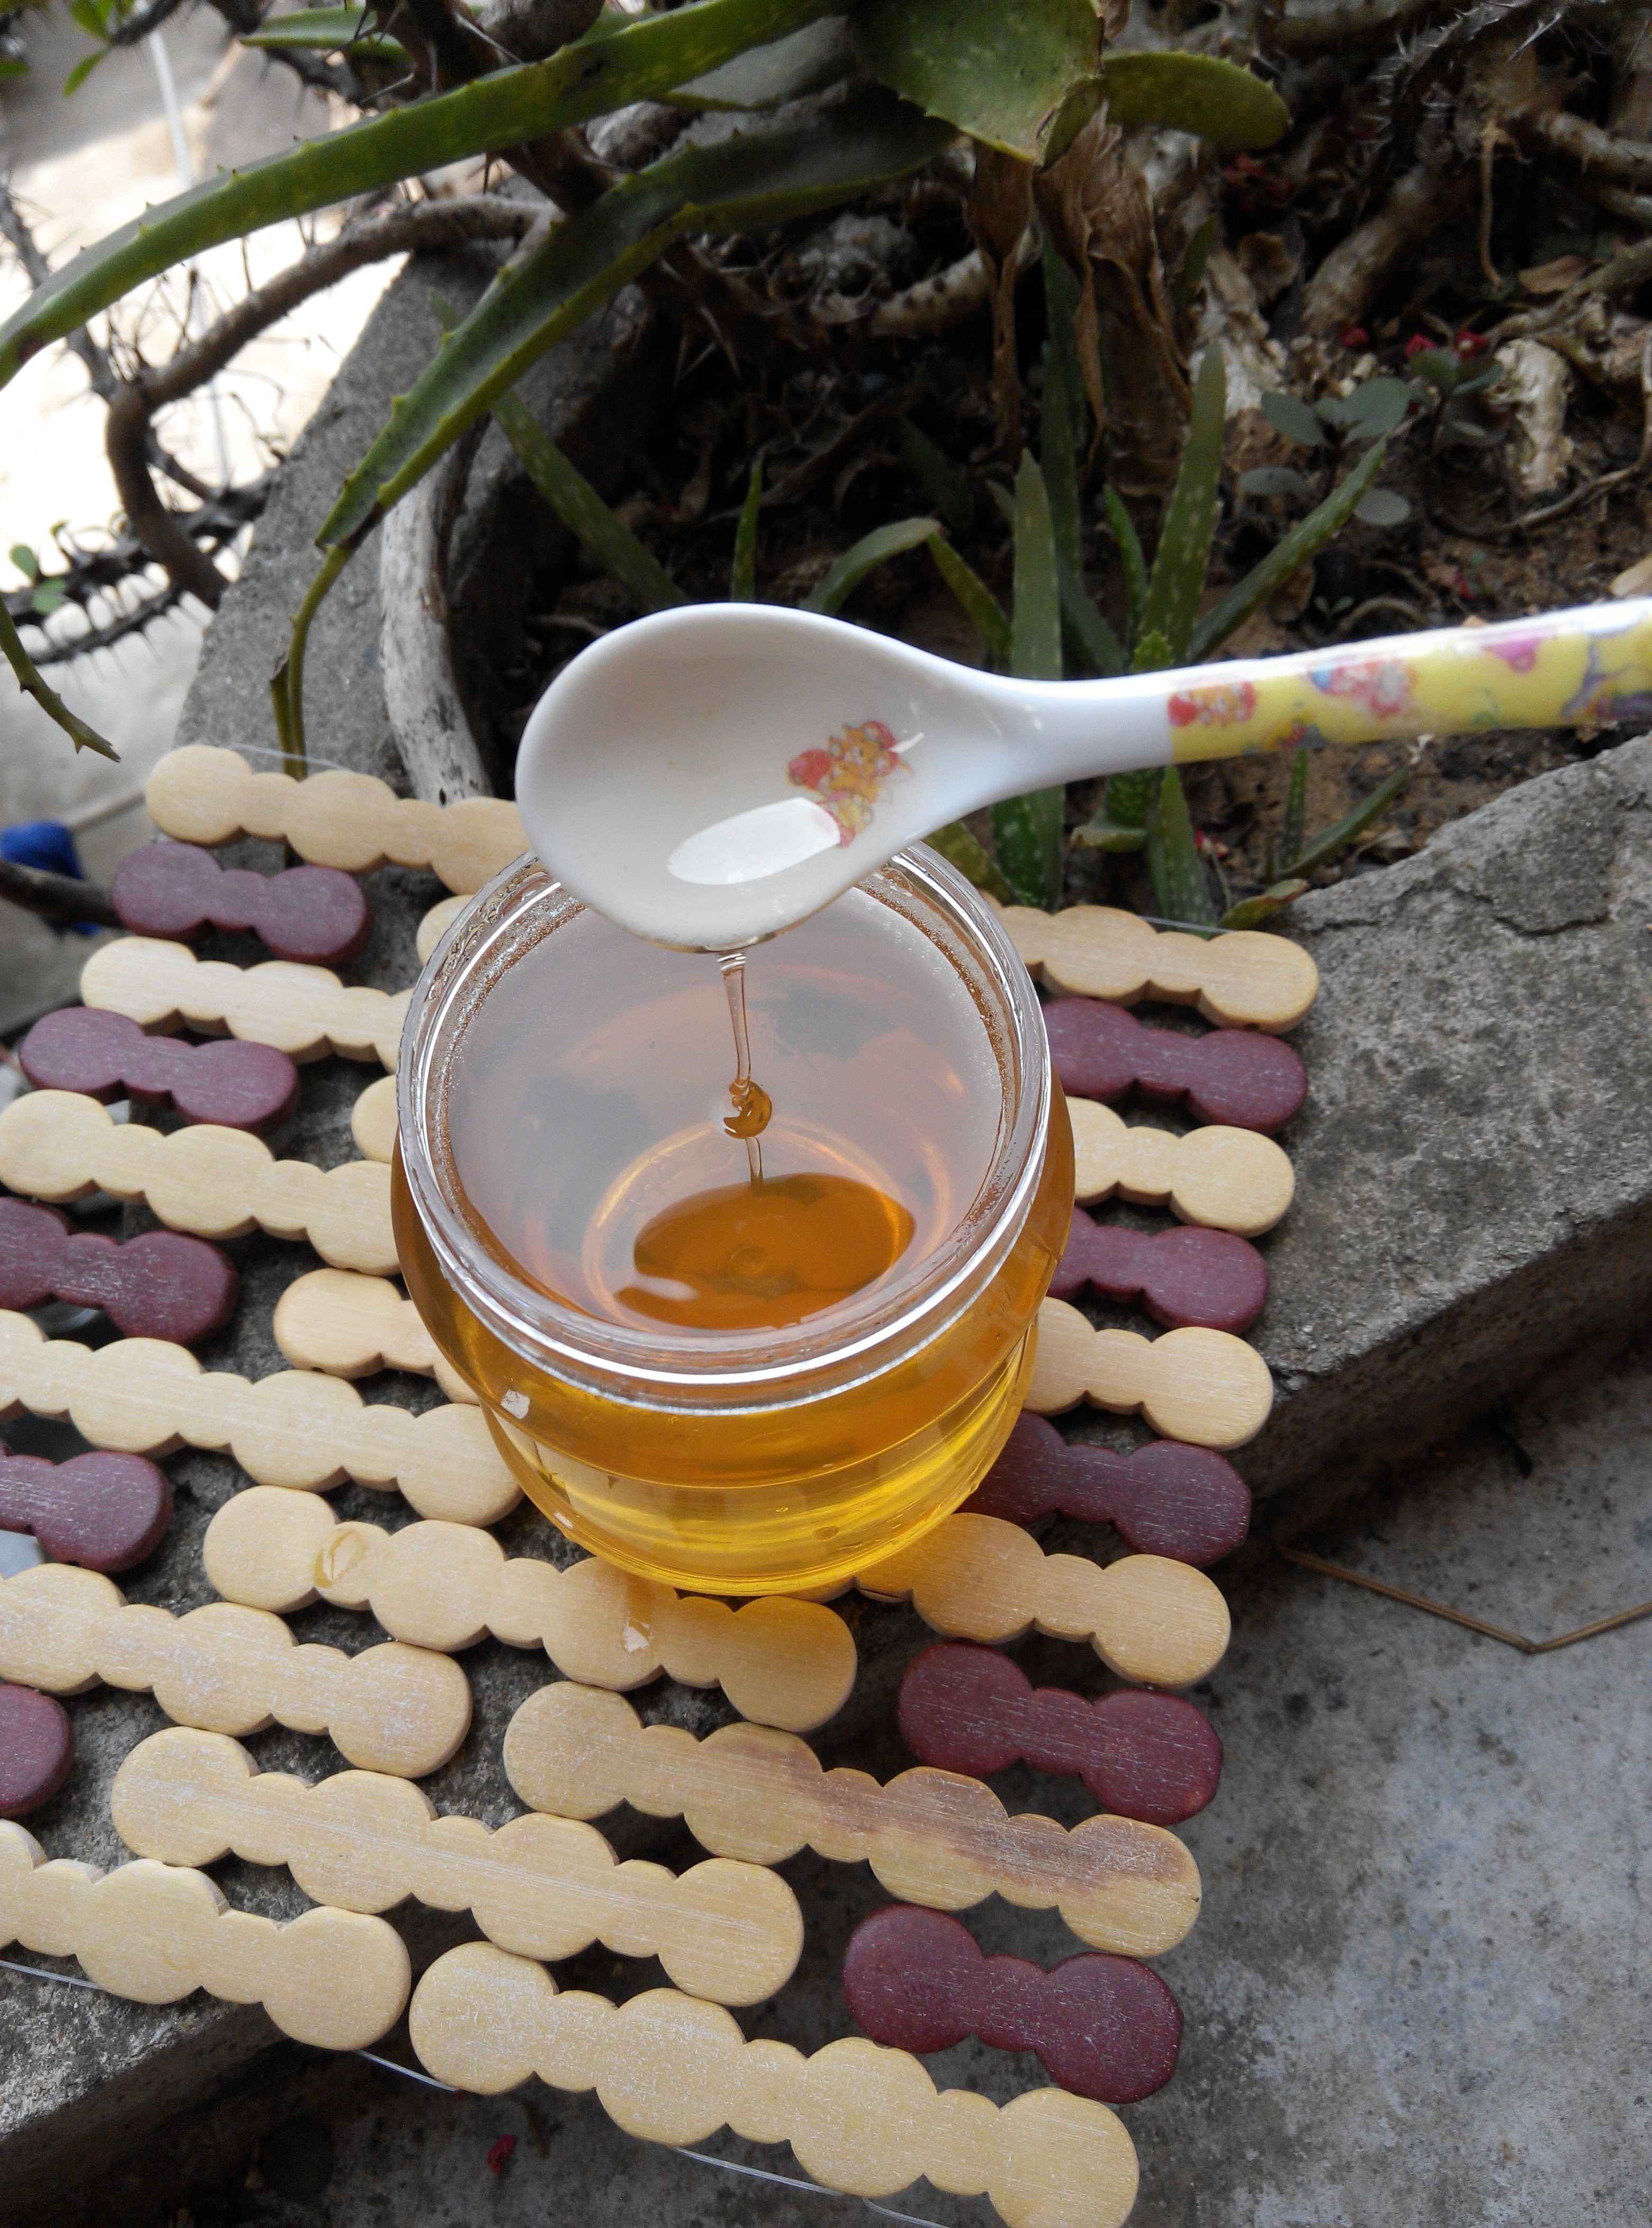 土蜂蜜纯天然 枸杞蜂蜜的价格 怎样养蜂蜜 蜂蜜批发市场 散装蜂蜜